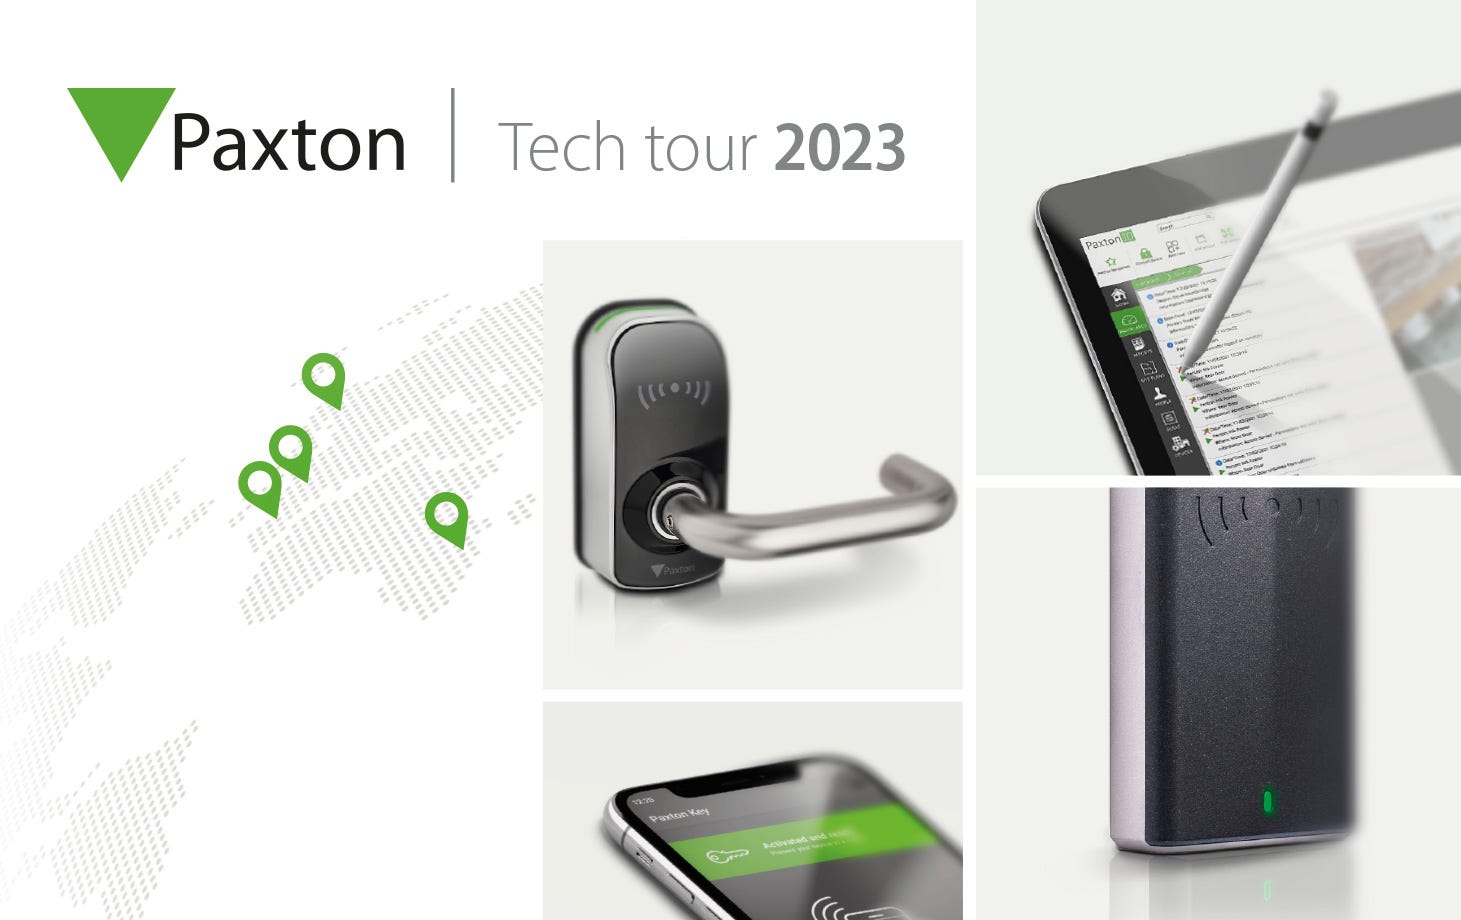 Paxton Tech Tour 2023